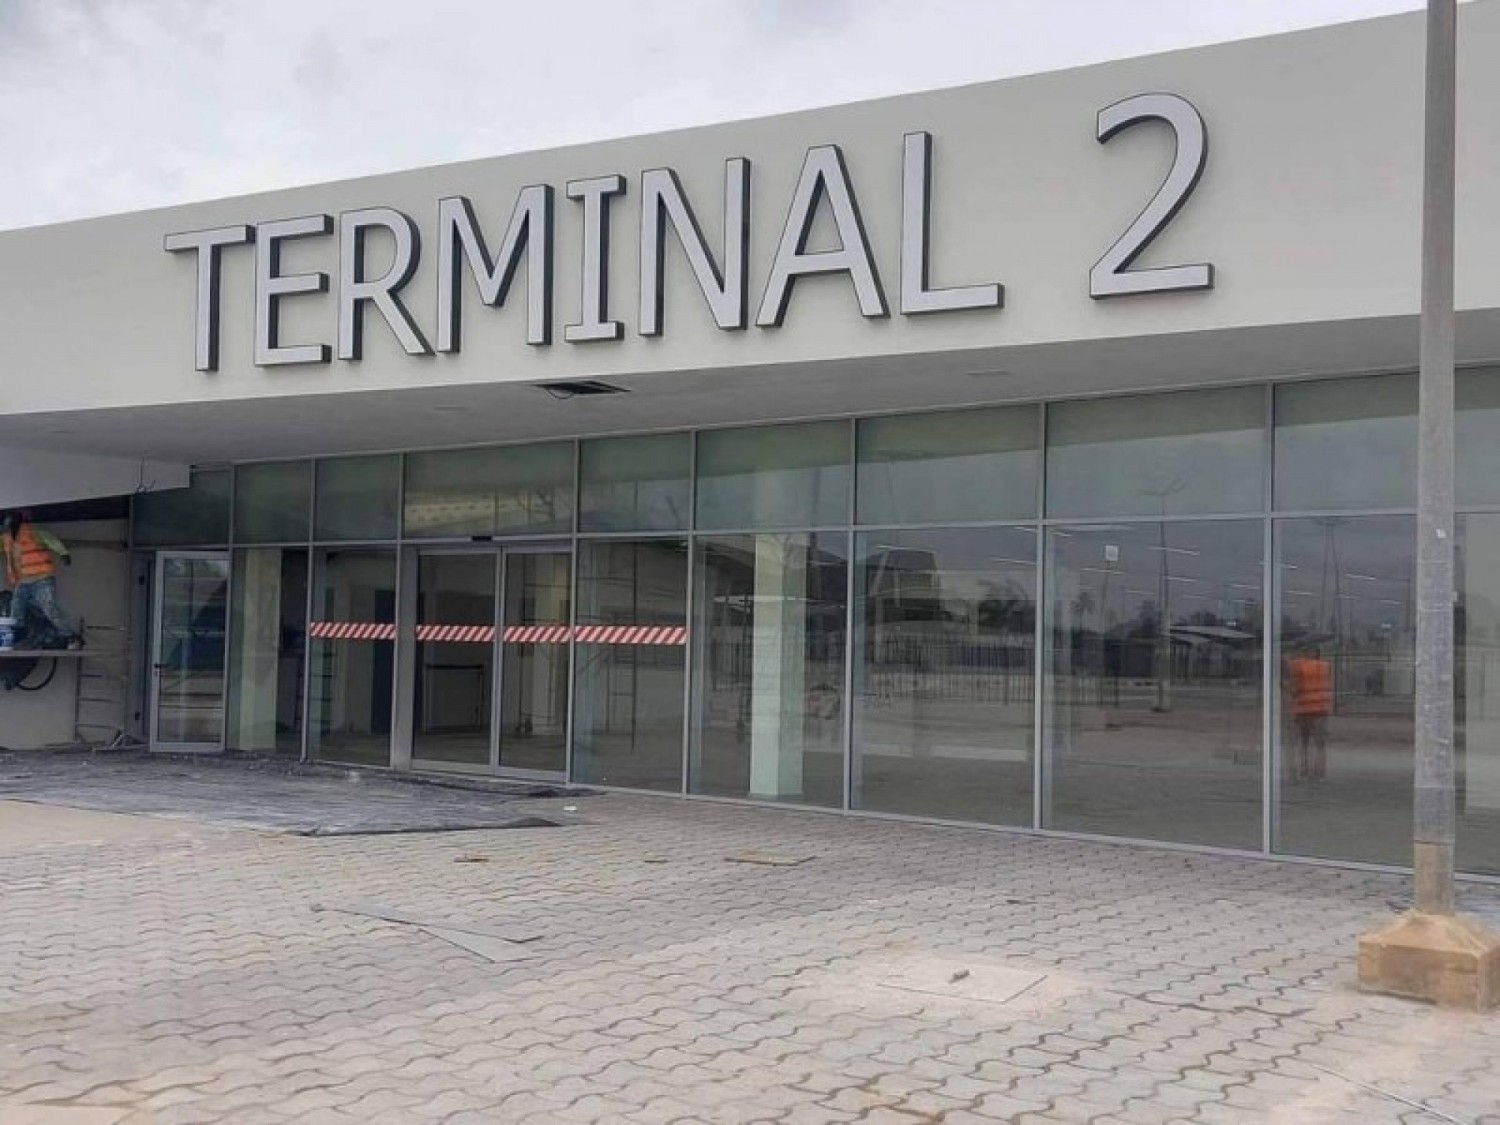 Côte d'Ivoire : Air Sénégal, Tunisair et Kenya Airways transférées vers le Terminal 2 (T2)